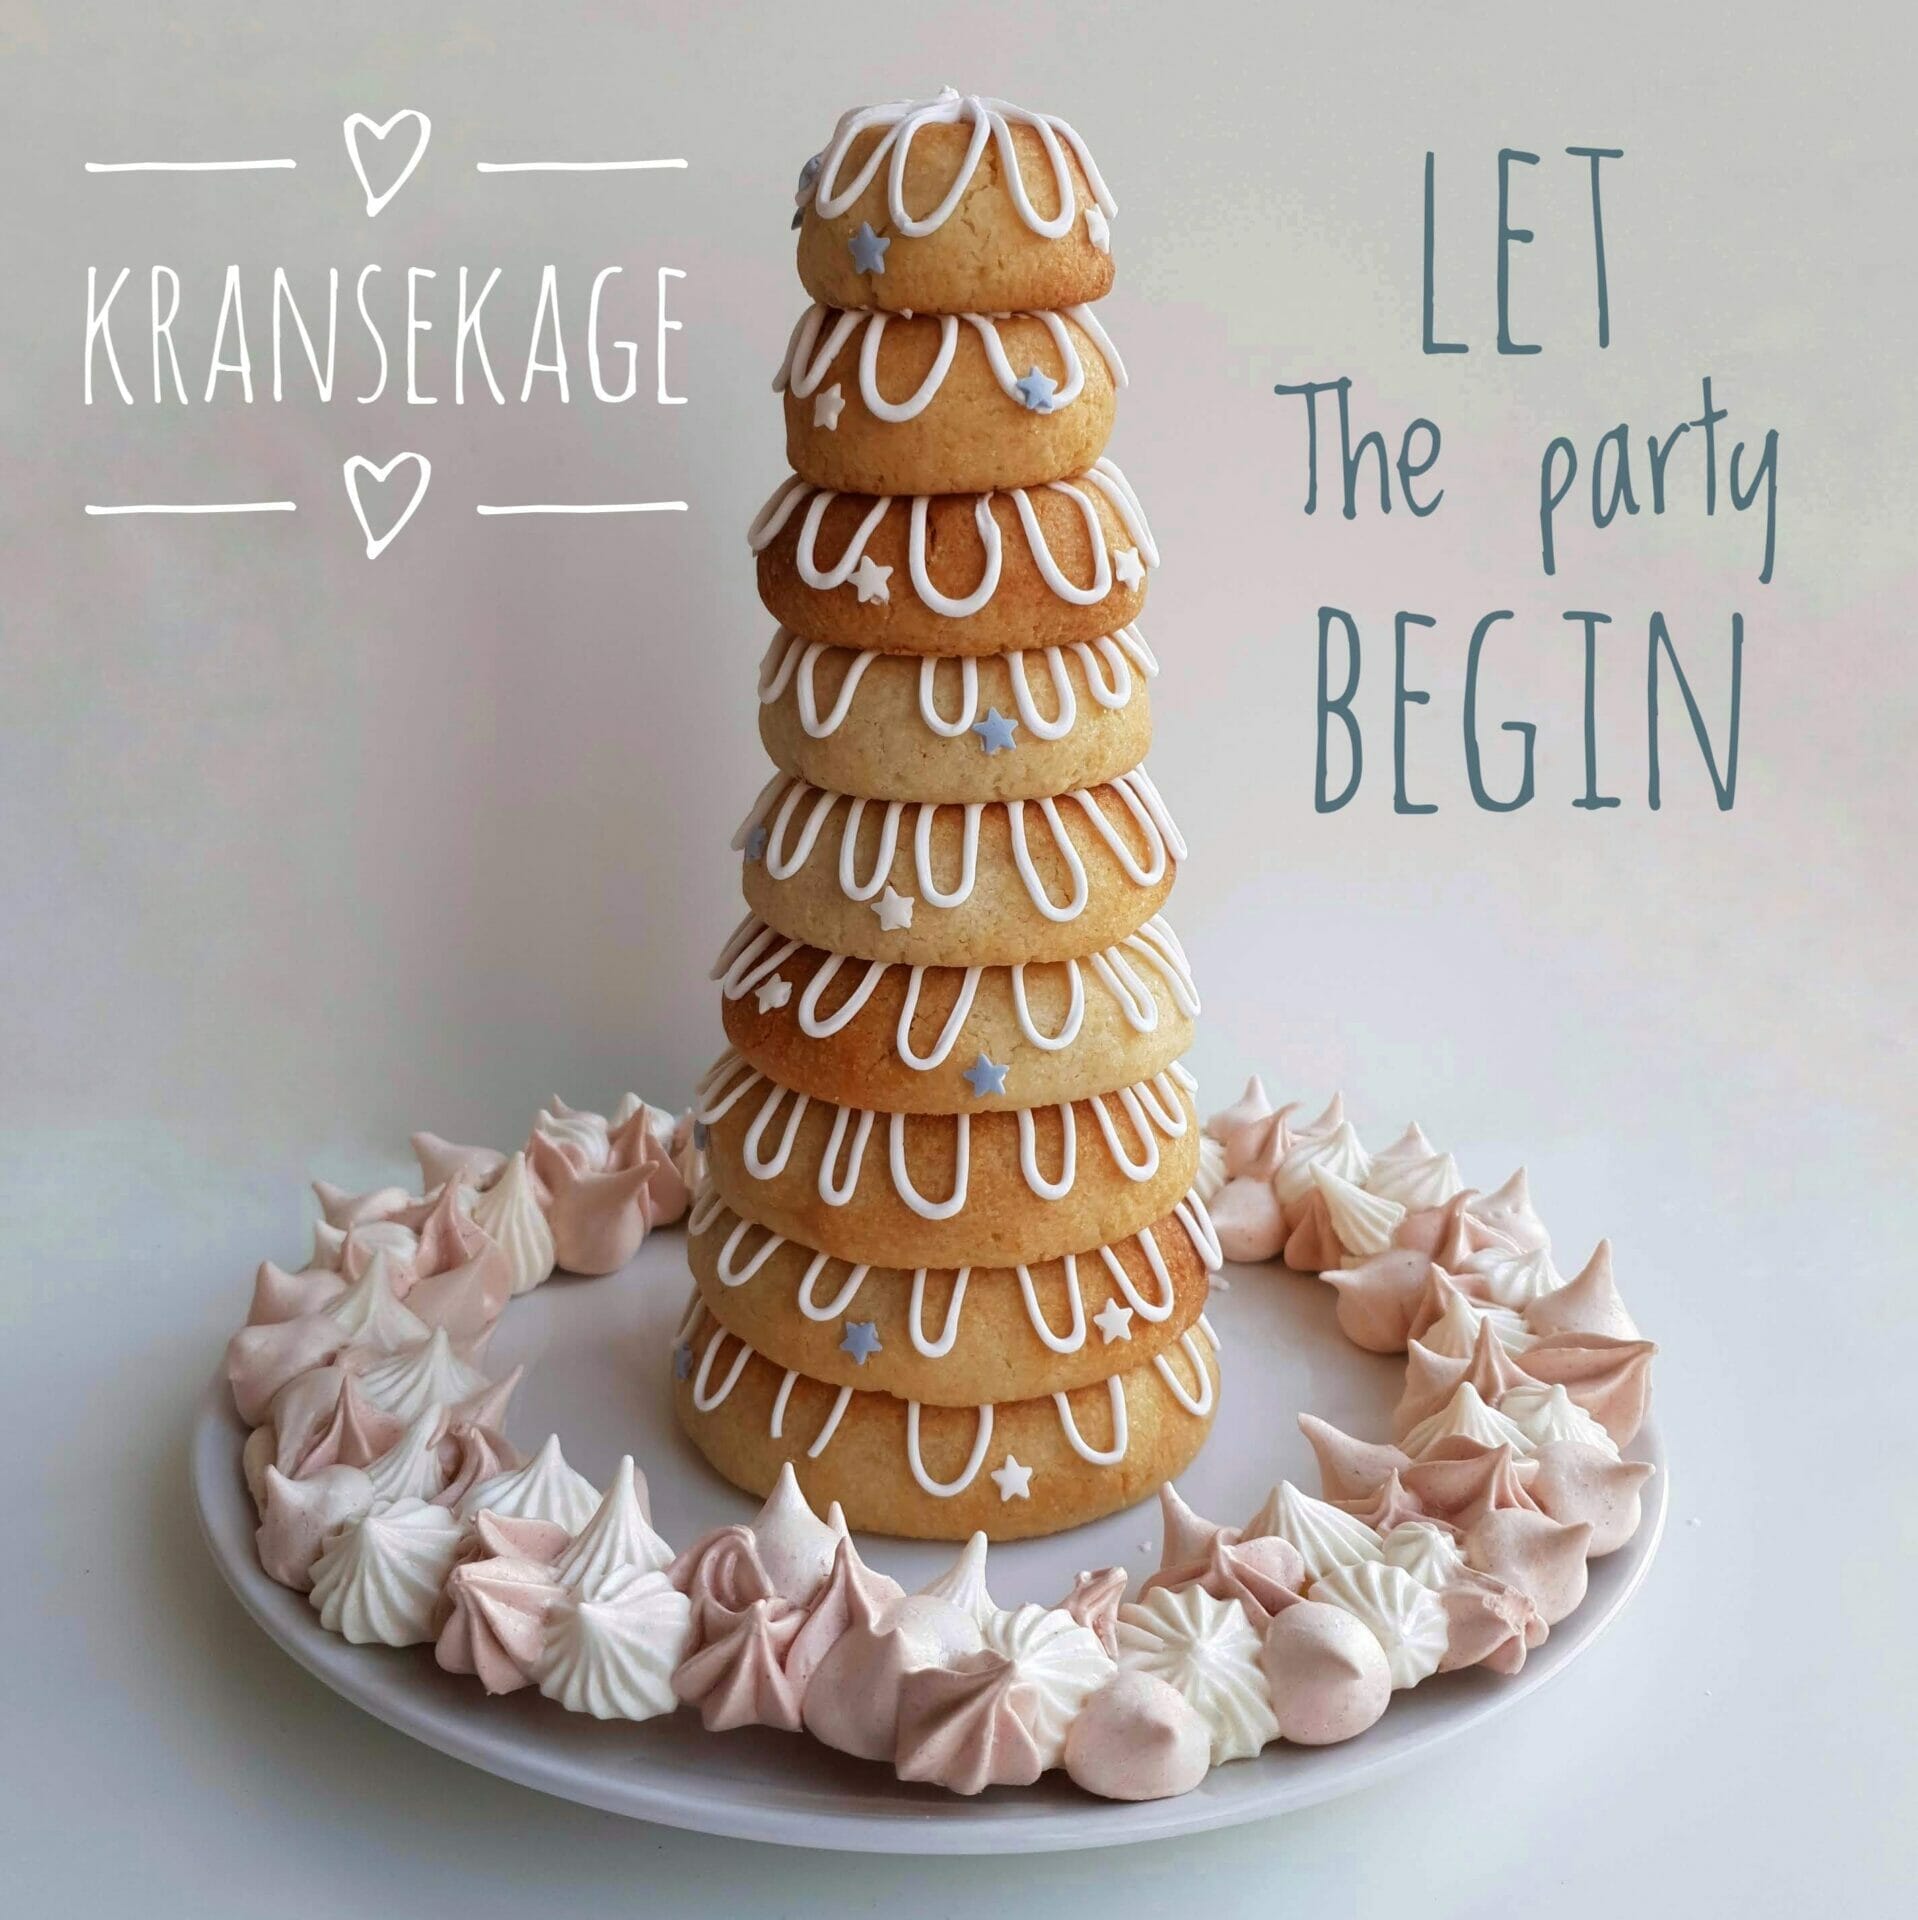 https://cdn.danishthings.com/wp-content/uploads/2016/12/Kransekage-wreath-cake-let-the-party-begin-Danish-Things-3.jpg